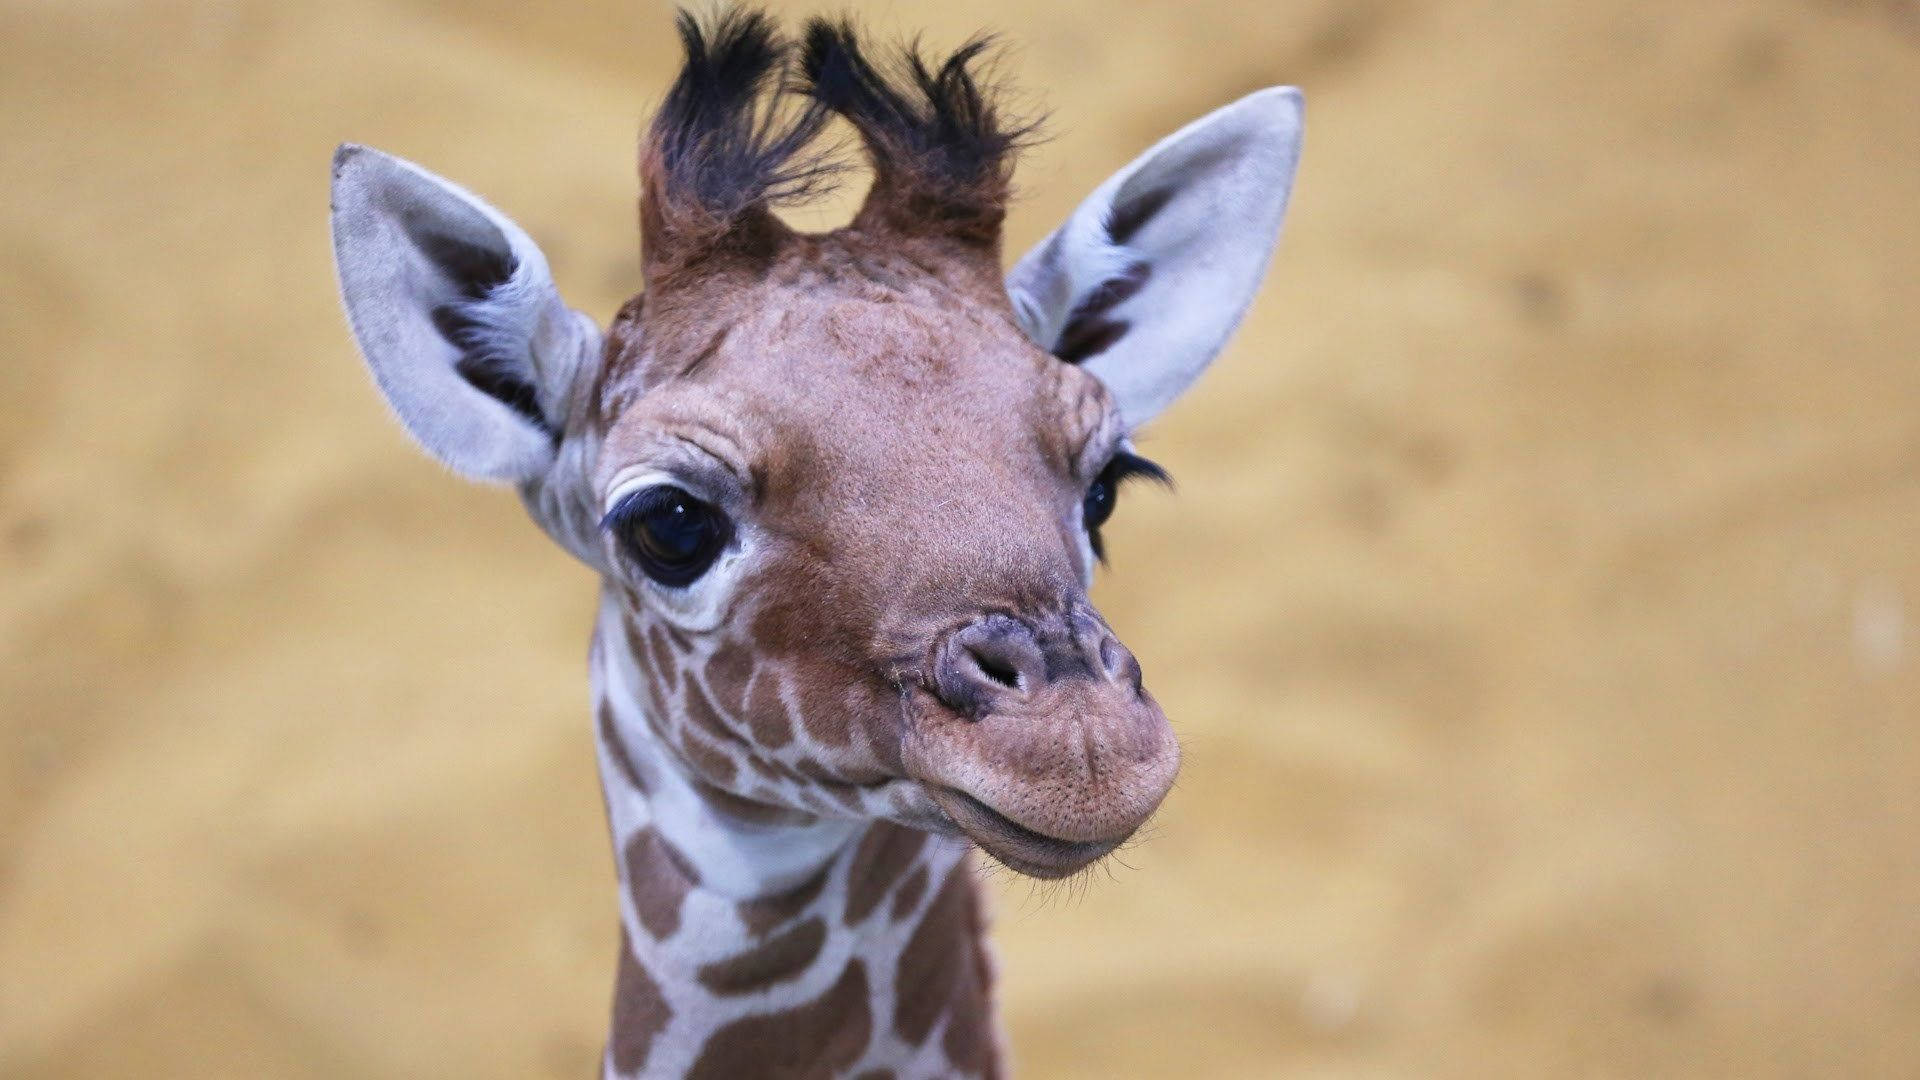 Baby Giraffe Cute Headshot Background